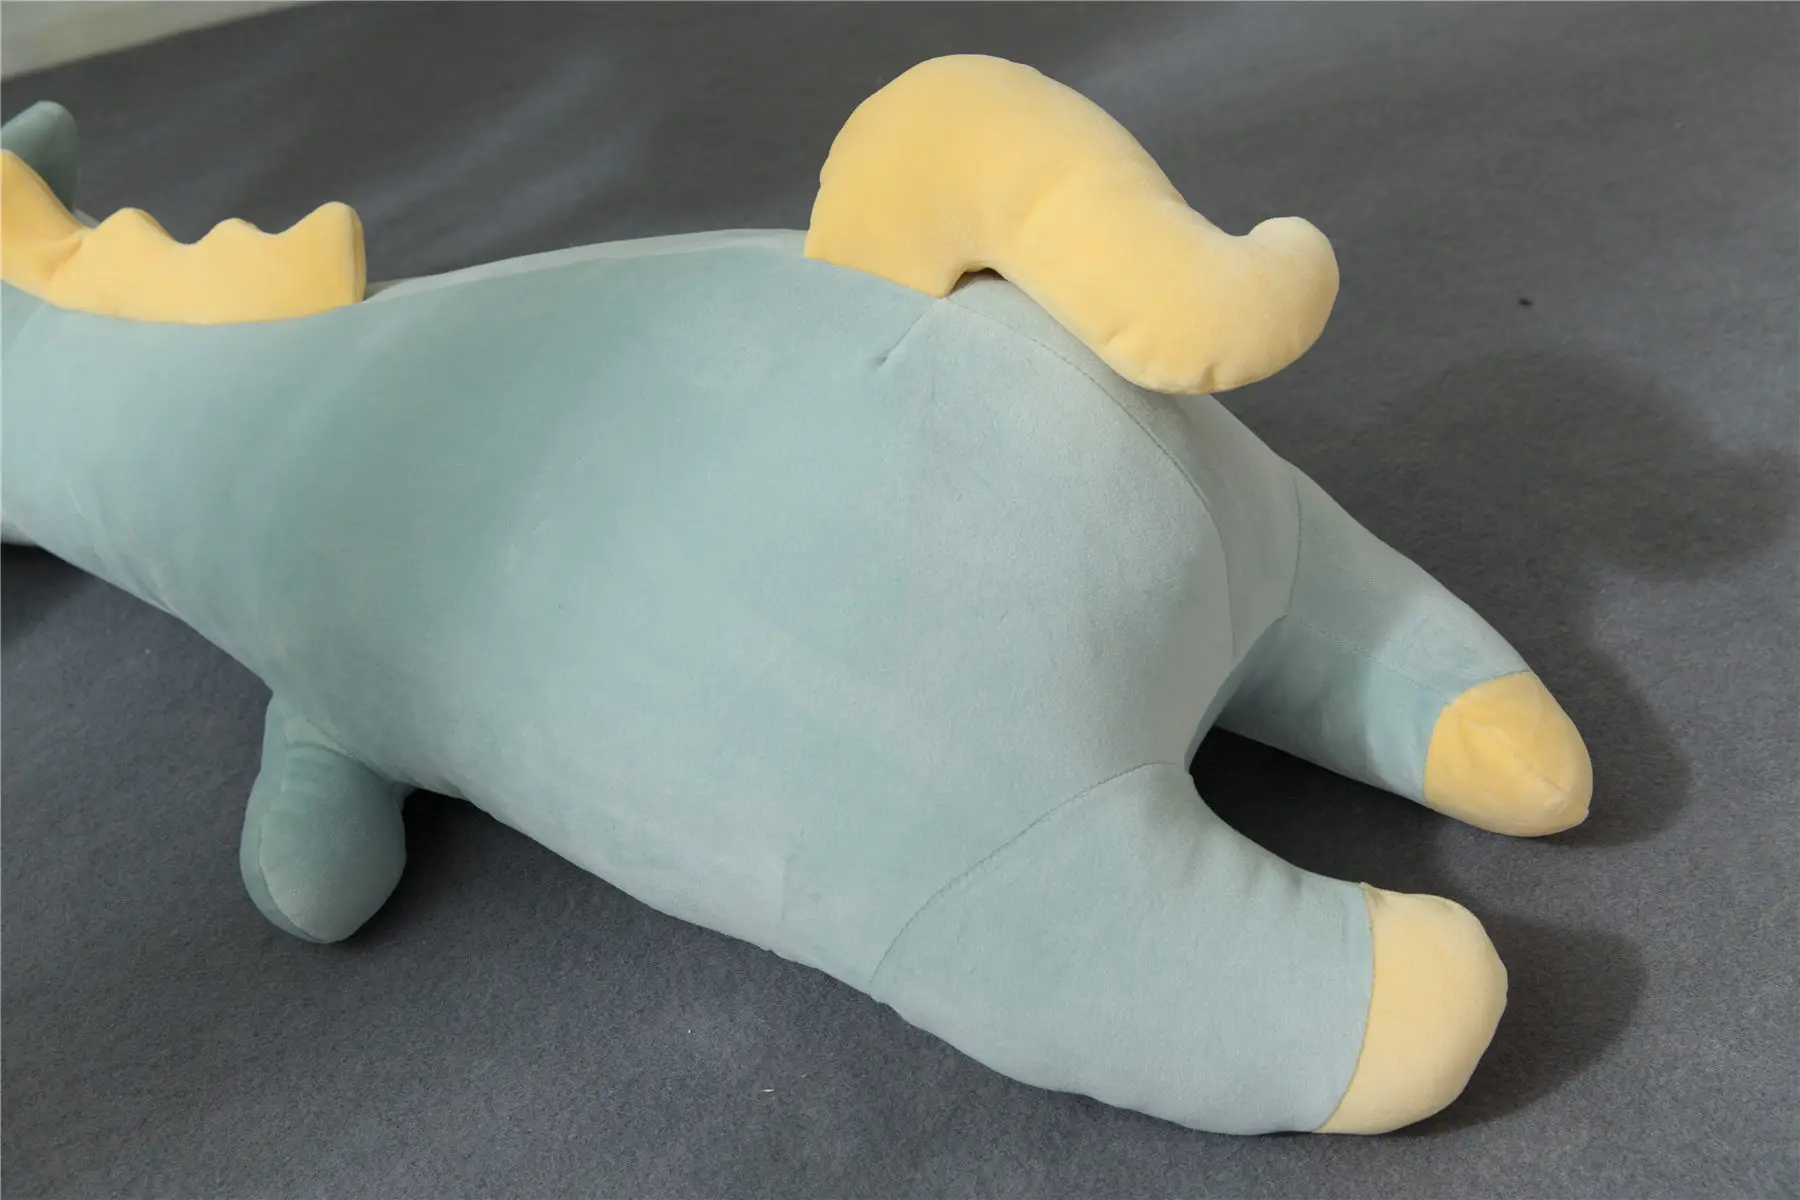 Инс Единорог программное обеспечение вечерние подушки мягкая плюшевая игрушка-подушка удерживающая Спящая игрушка с надписью Lucky нравится брать меня домой